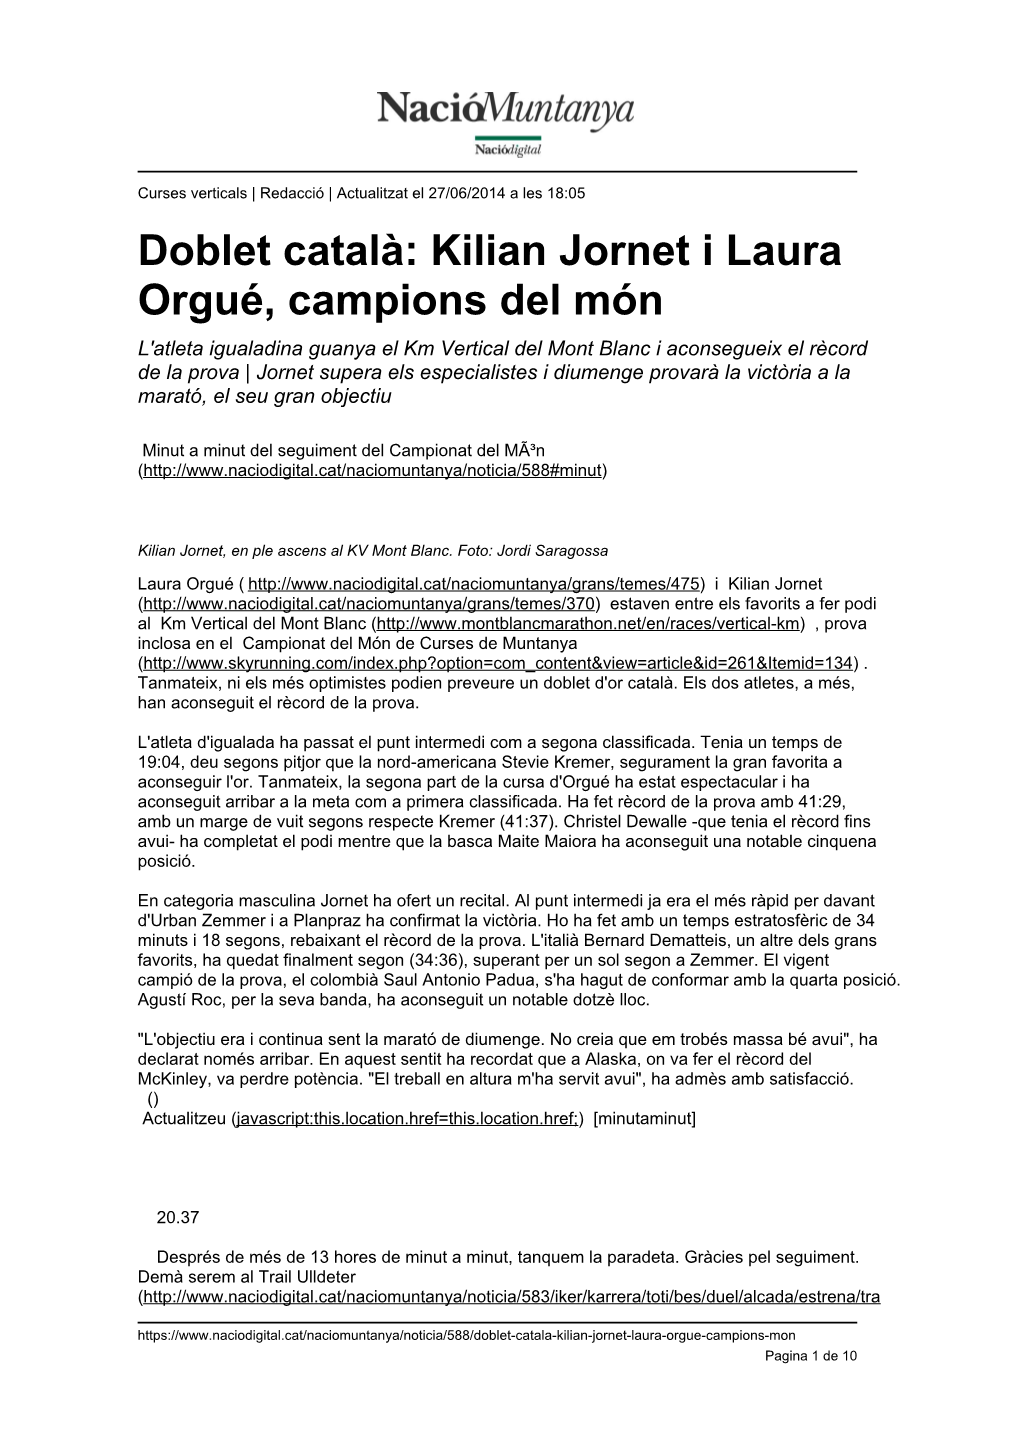 Doblet Català: Kilian Jornet I Laura Orgué, Campions Del